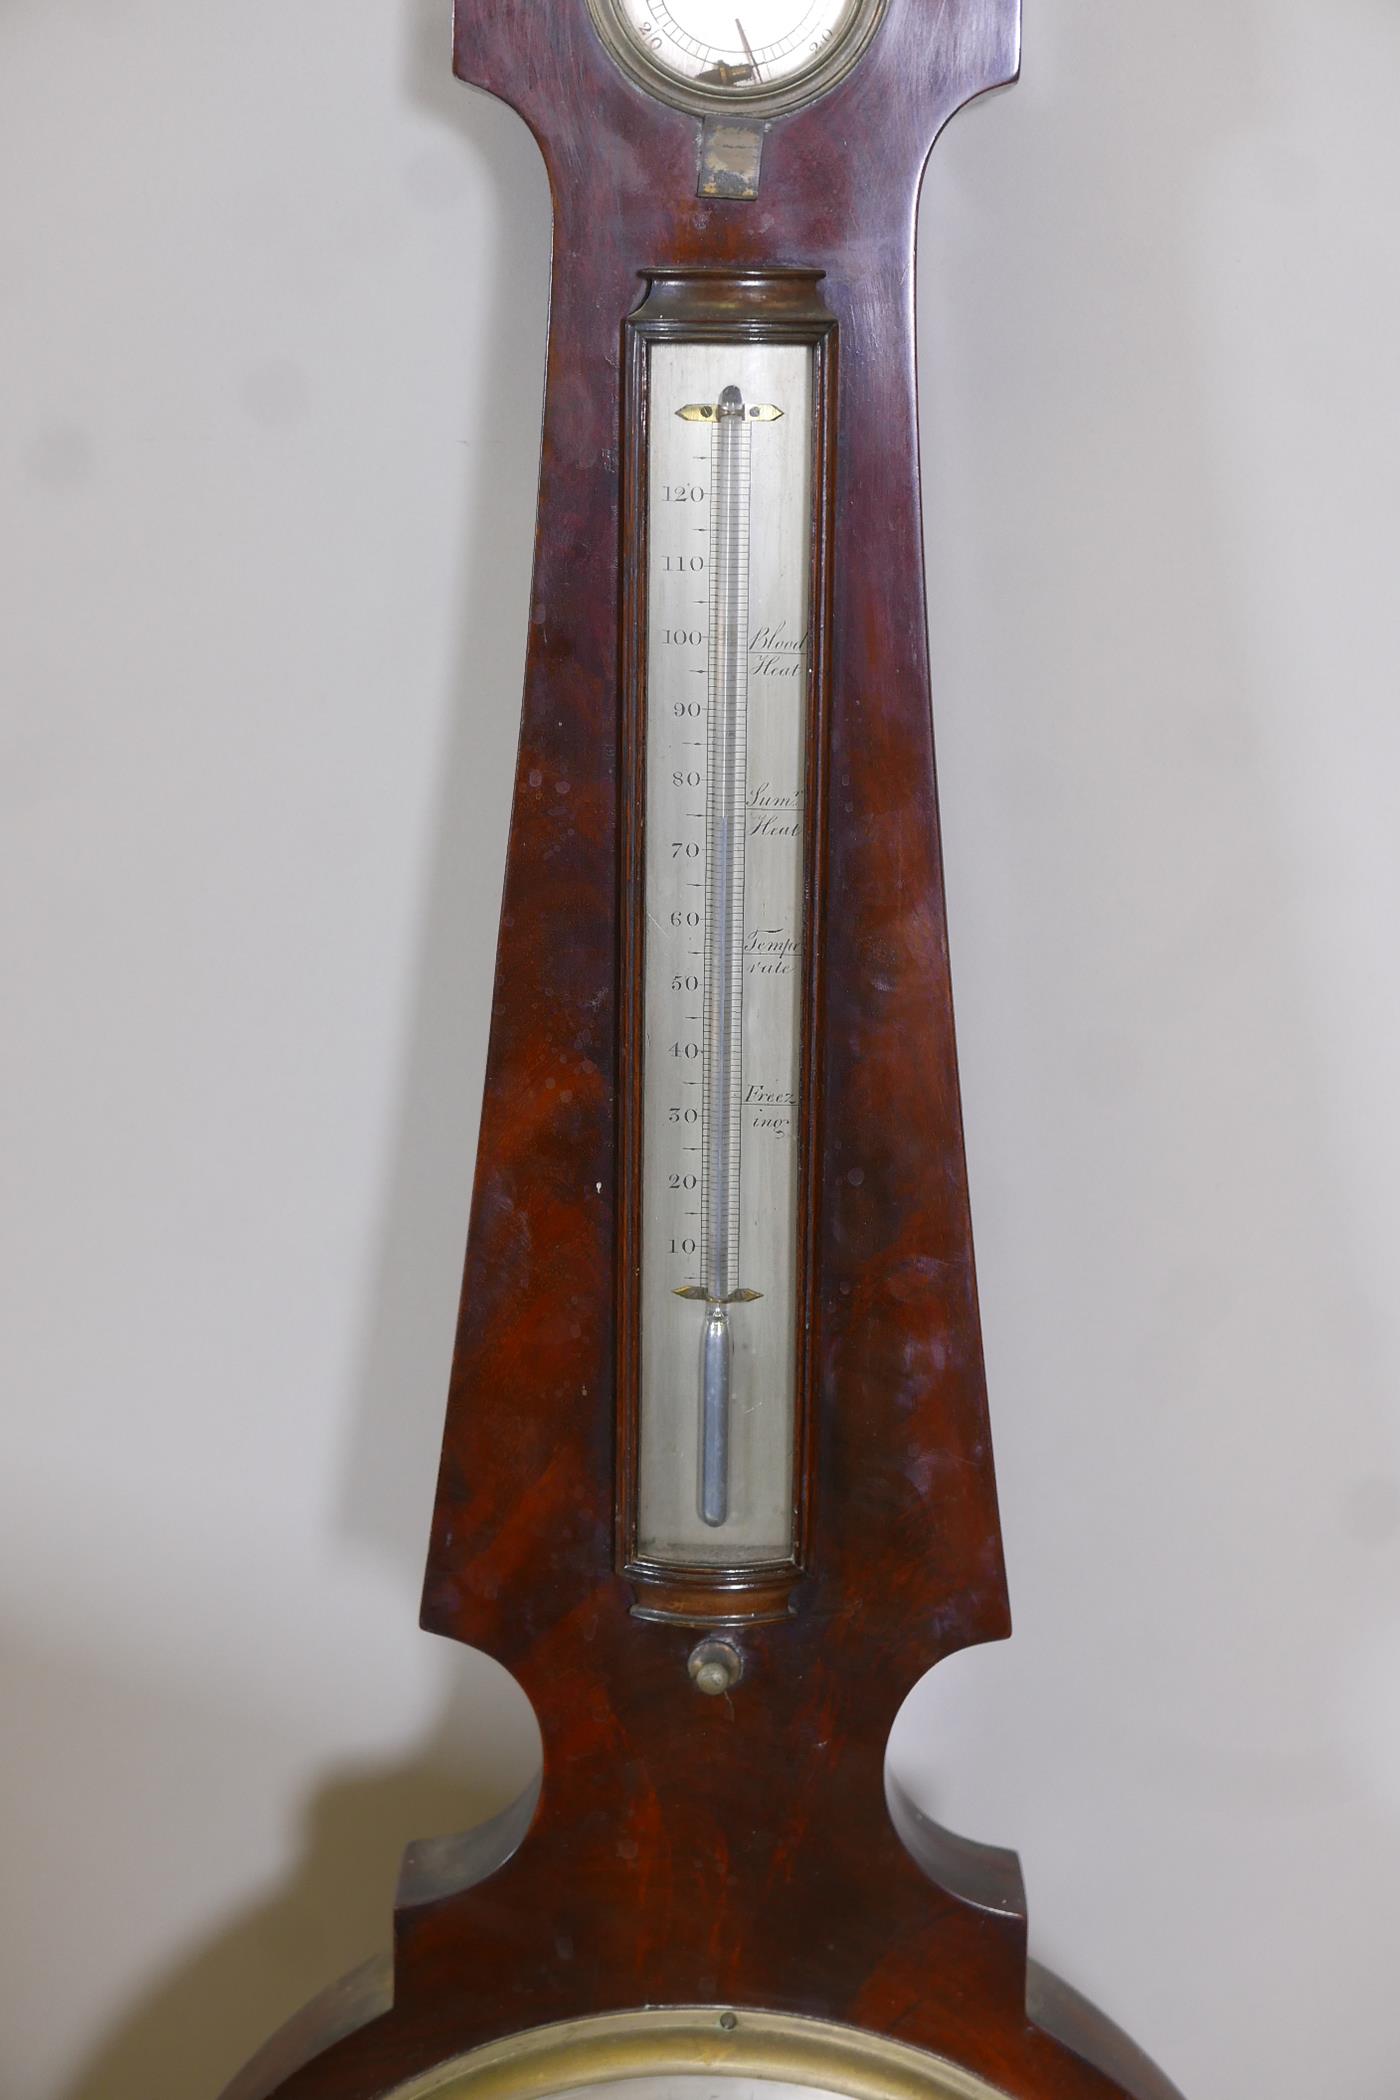 A C19th Regency flame mahogany banjo barometer by S. Calderara of London, 42" high - Image 2 of 5